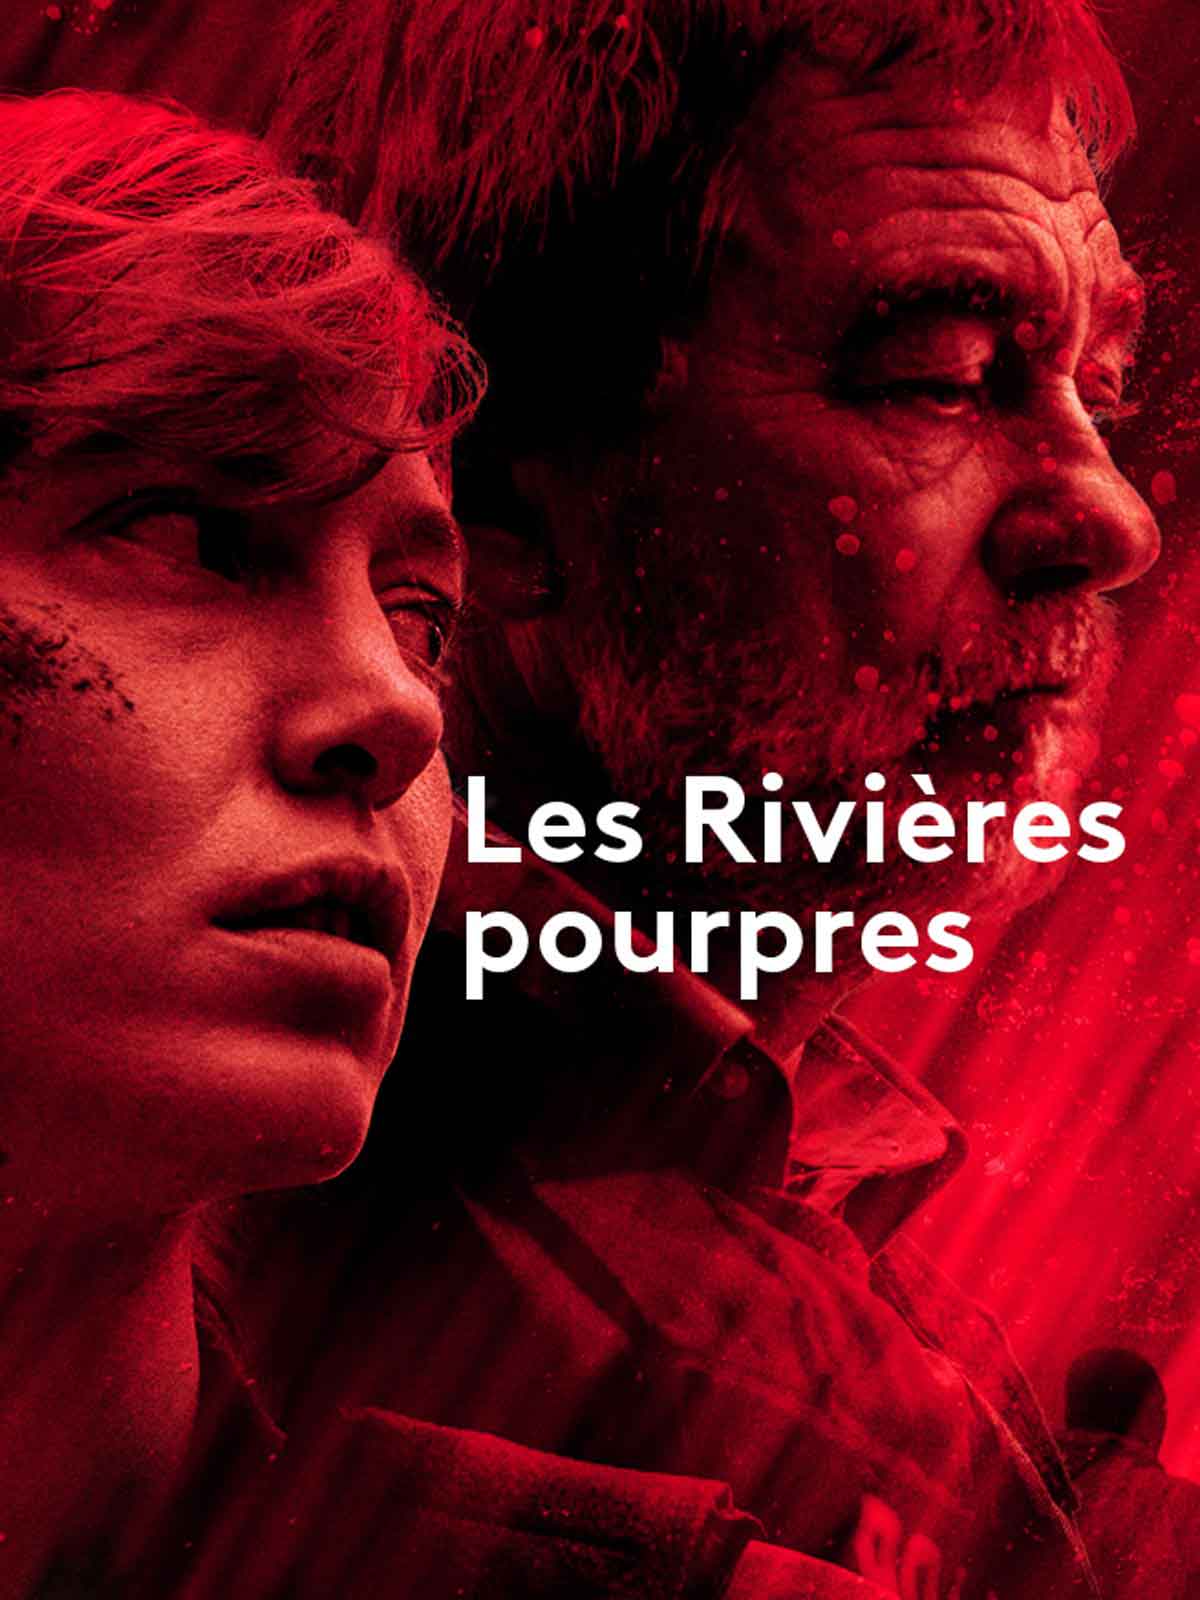 Poster of the TV serie Les Rivières pourpres